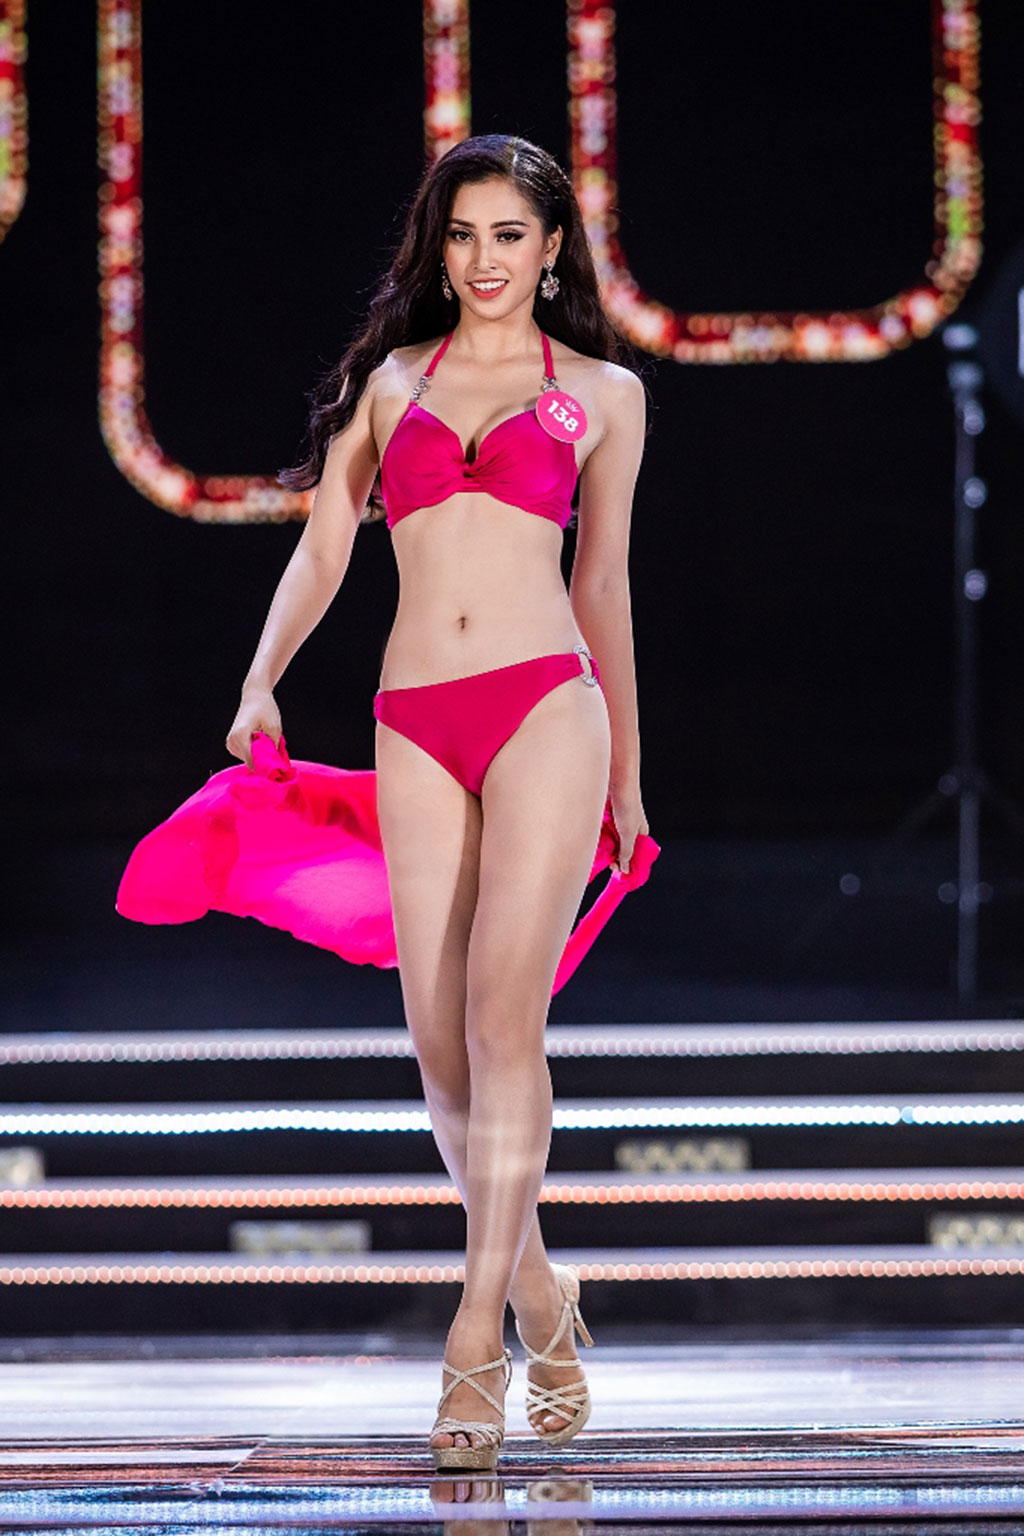 Sắc vóc tân hoa hậu 2018 Trần Tiểu Vy, cô gây chú ý bởi gương mặt xinh đẹp cùng hình thể chuẩn, cao 1,74m, số đo ba vòng 84-63-90.